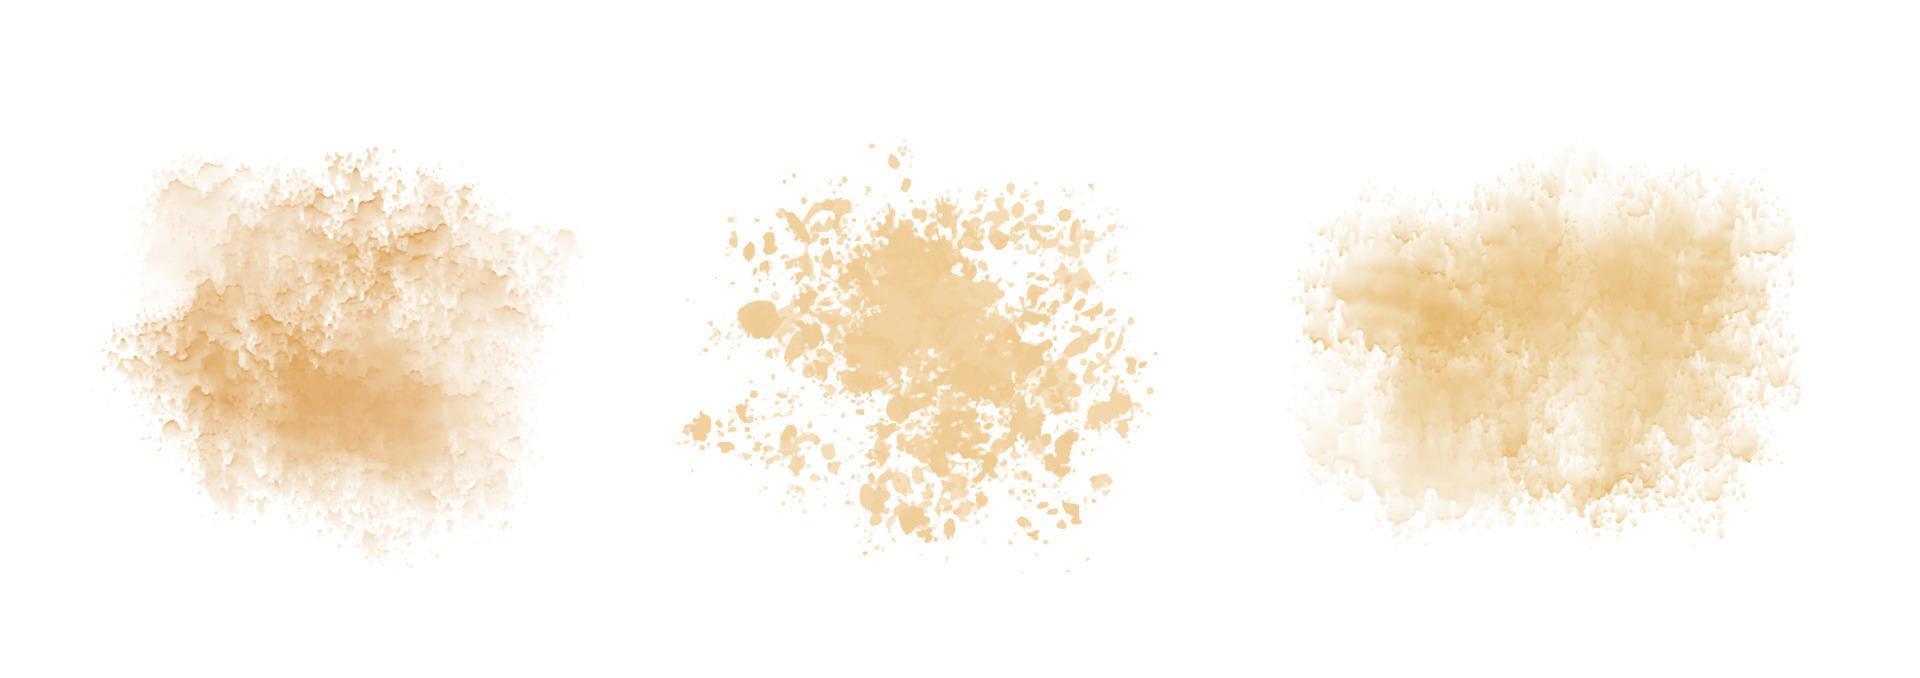 conjunto de mancha de acuarela beige abstracta. textura vectorial de arena polvorienta vector